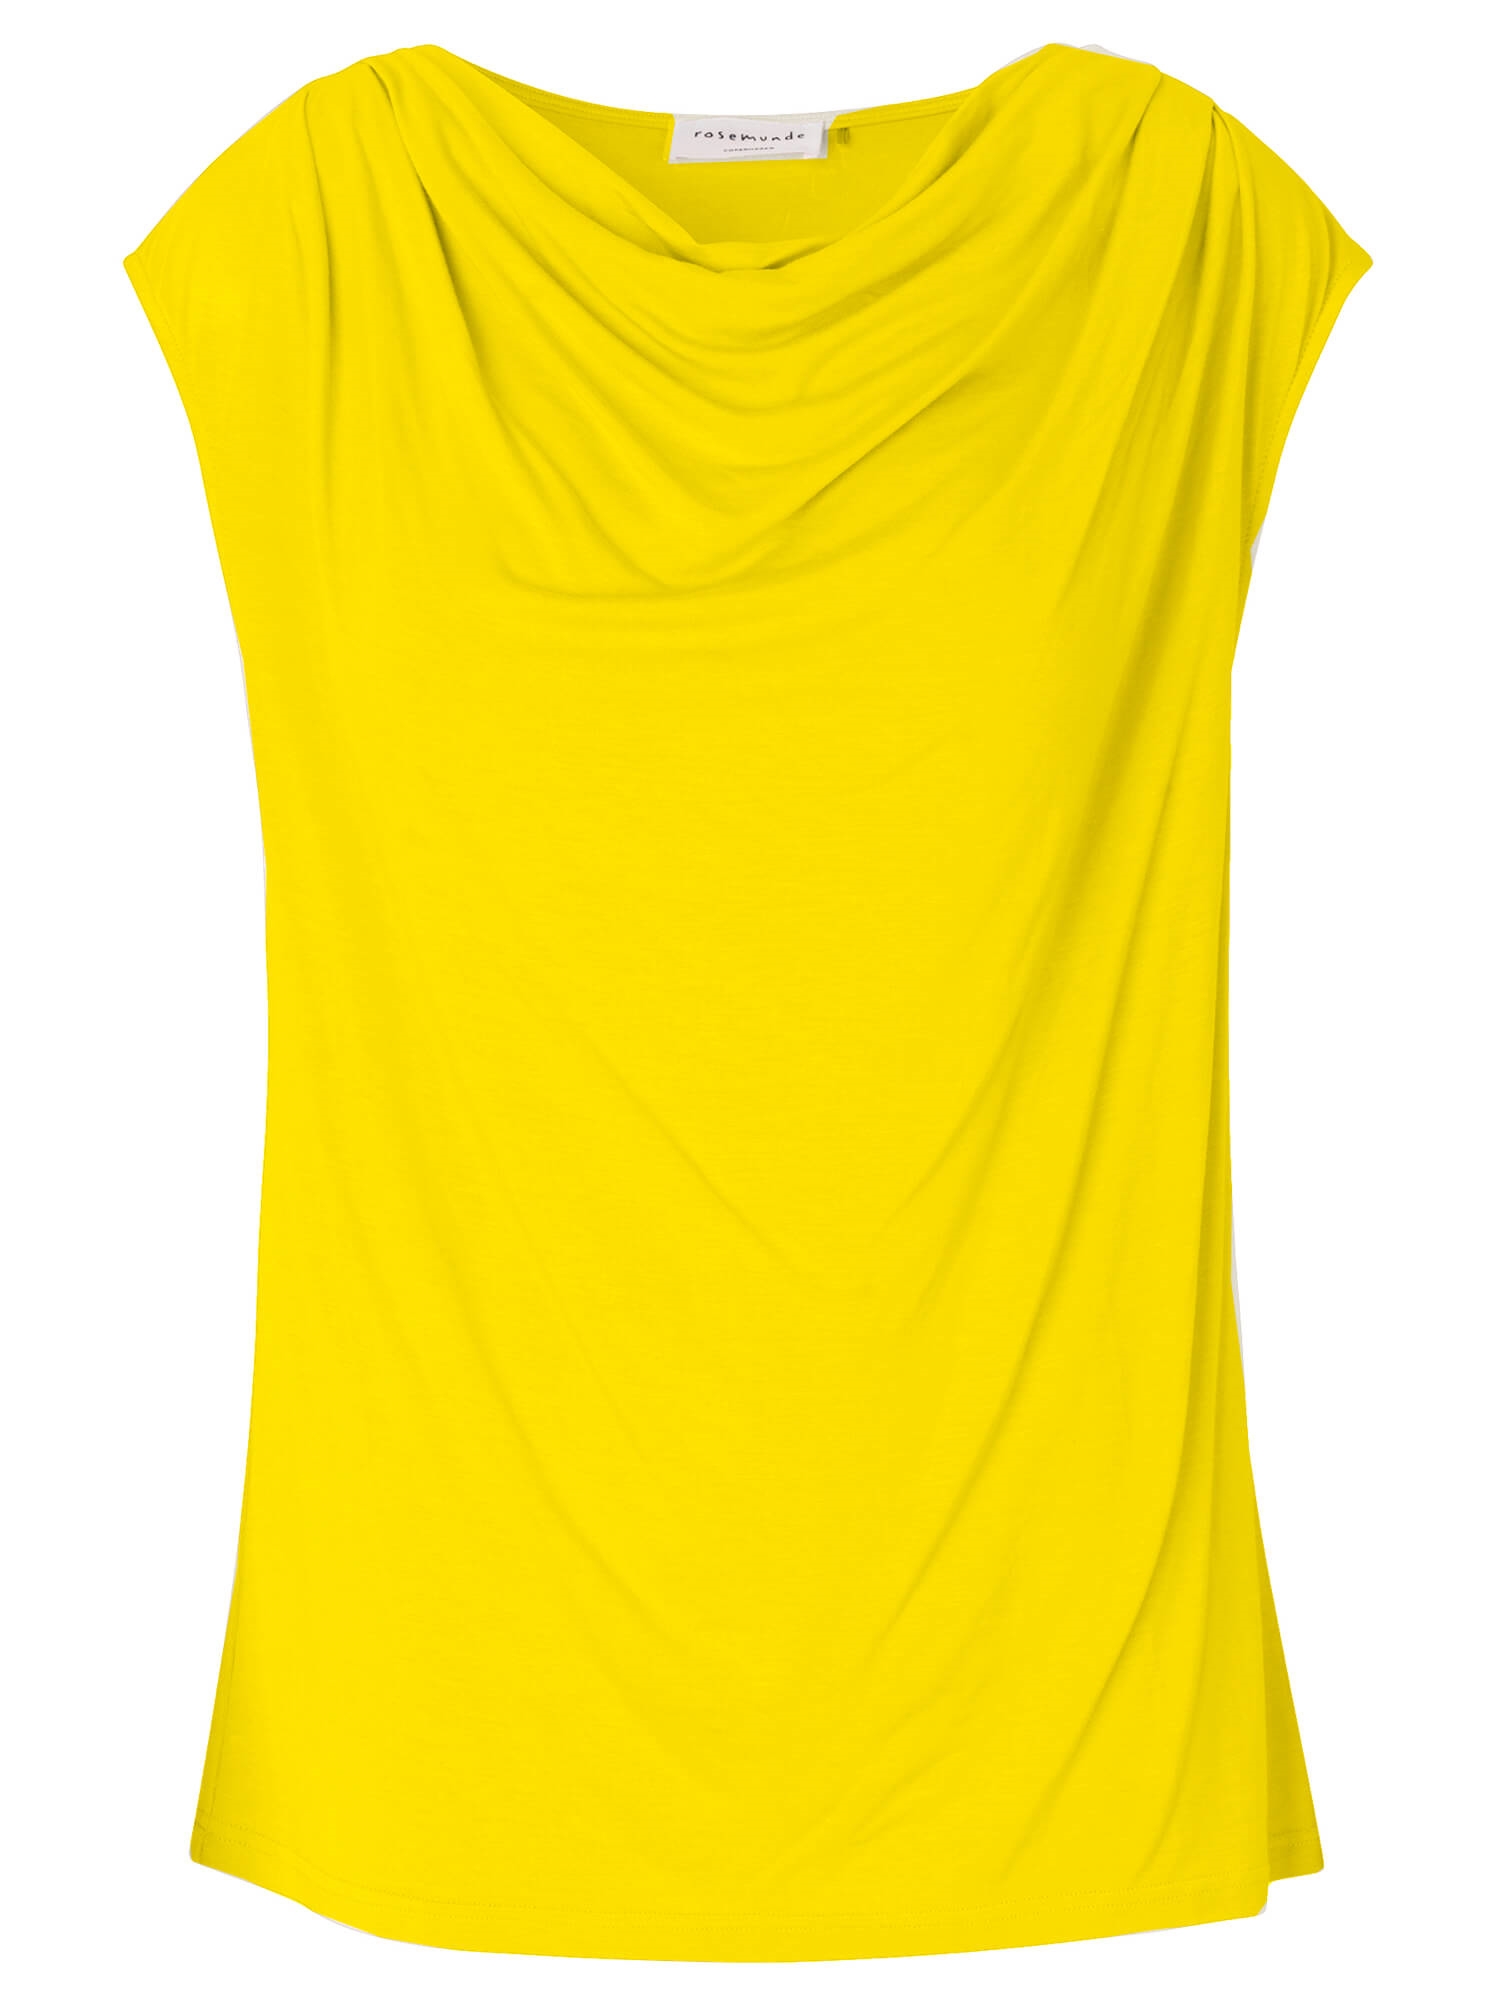 Kvinde forbrug importere Rosemunde T-shirt, Sunshine Yellow → Køb den her